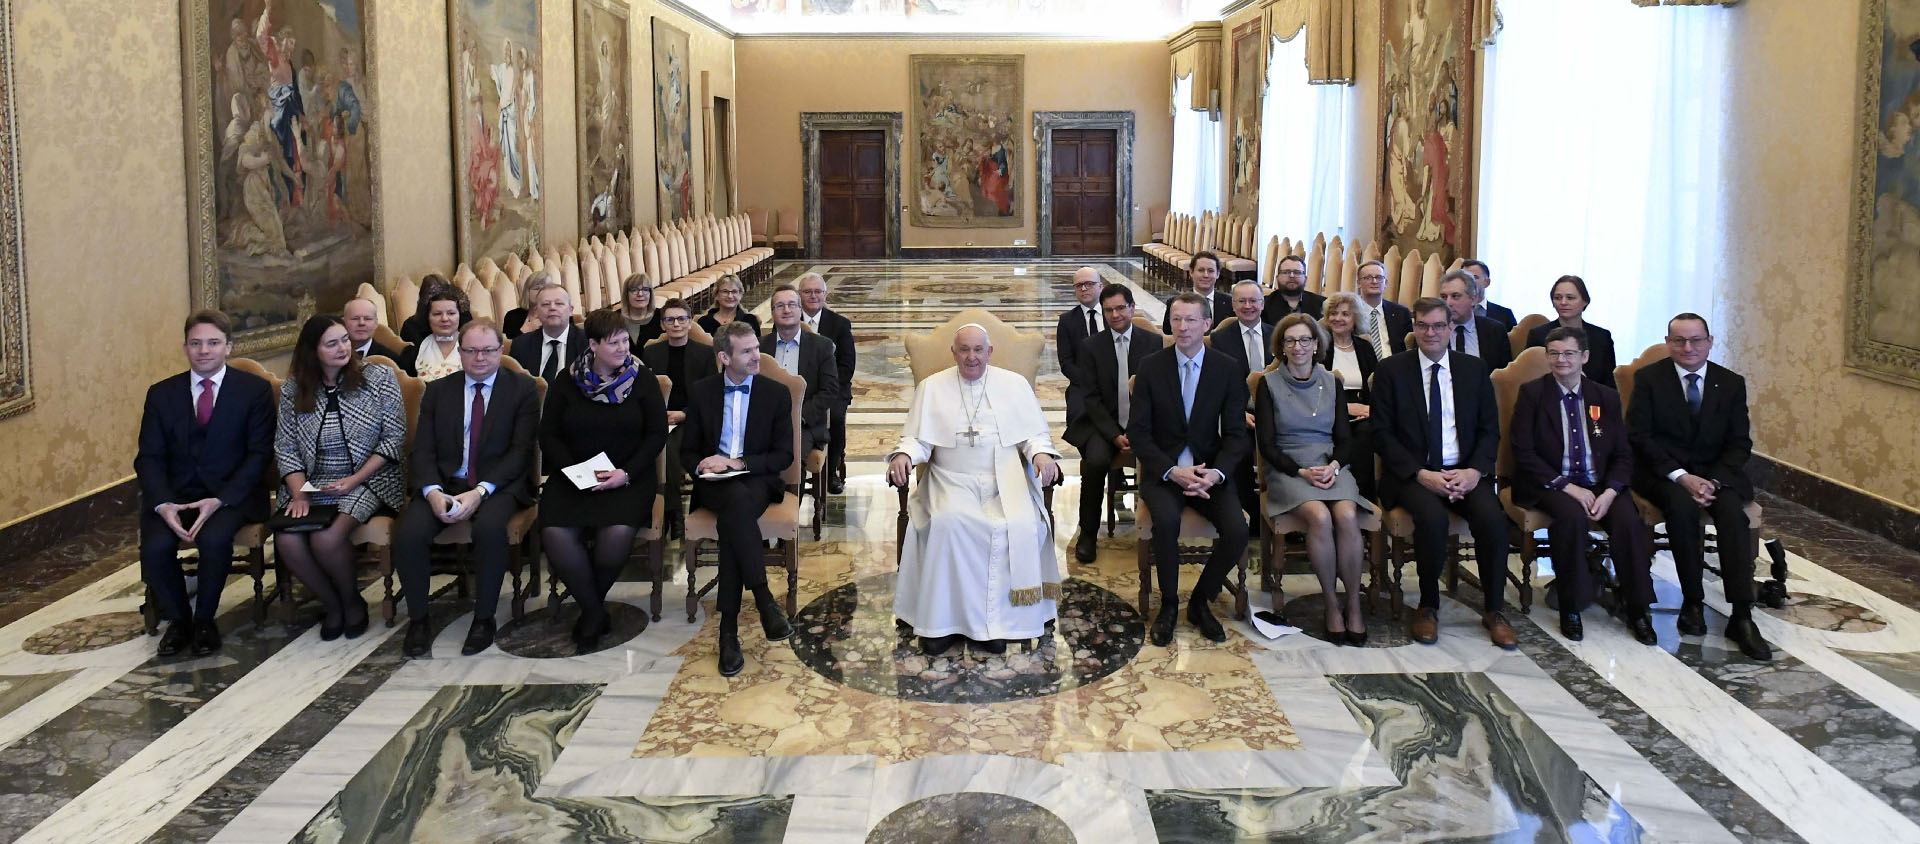 Le pape a reçu des journalistes catholiques allemands | © Vatican Media